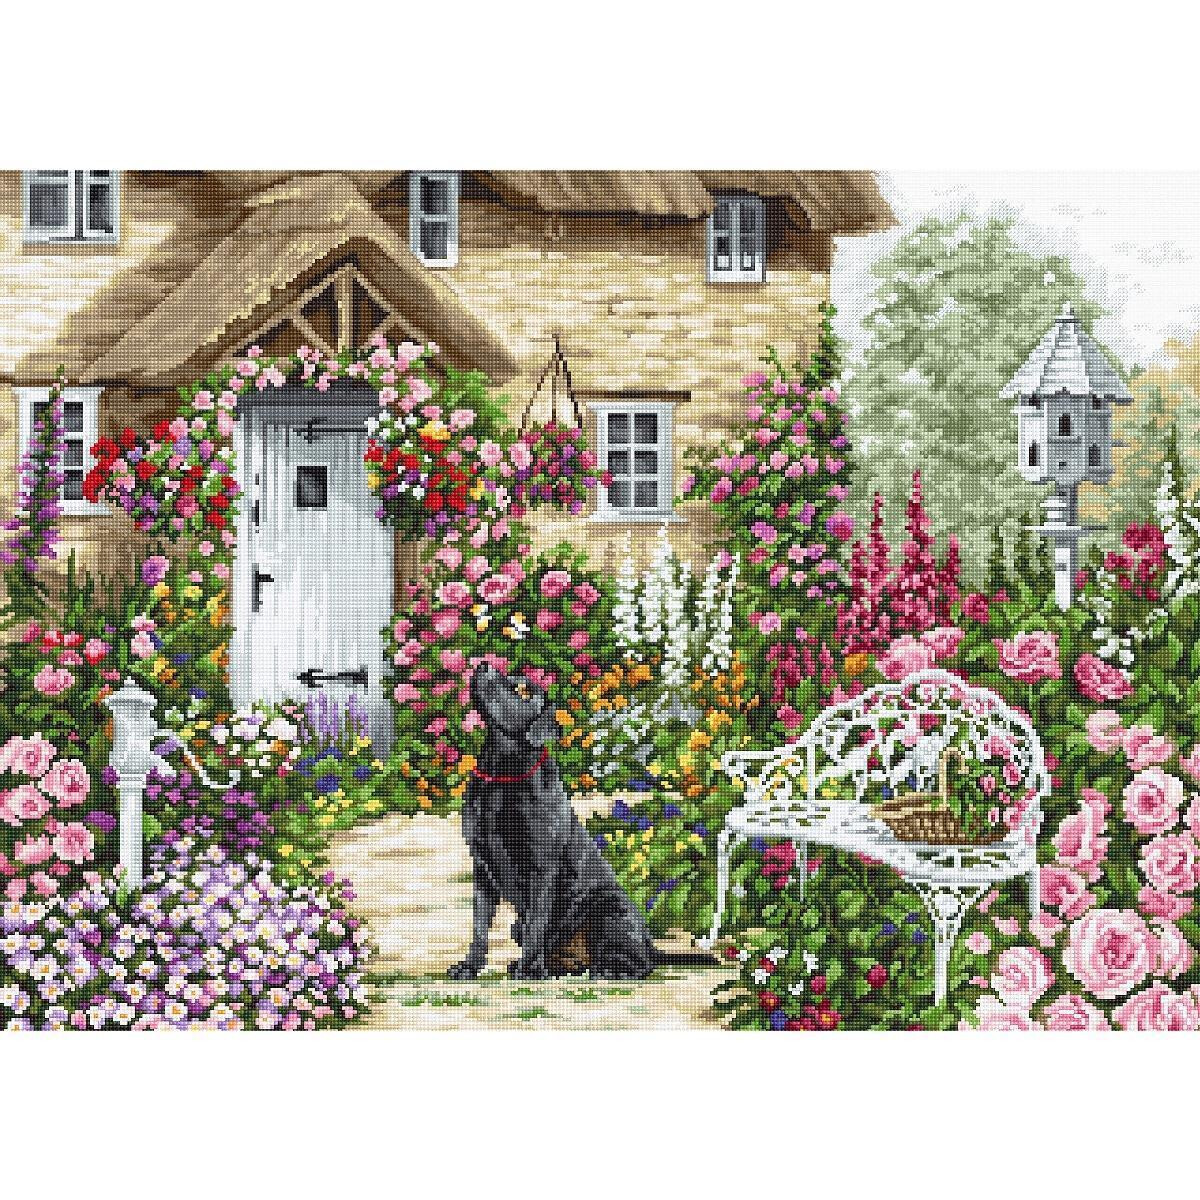 Een weelderige tuinscène toont een schilderachtig...